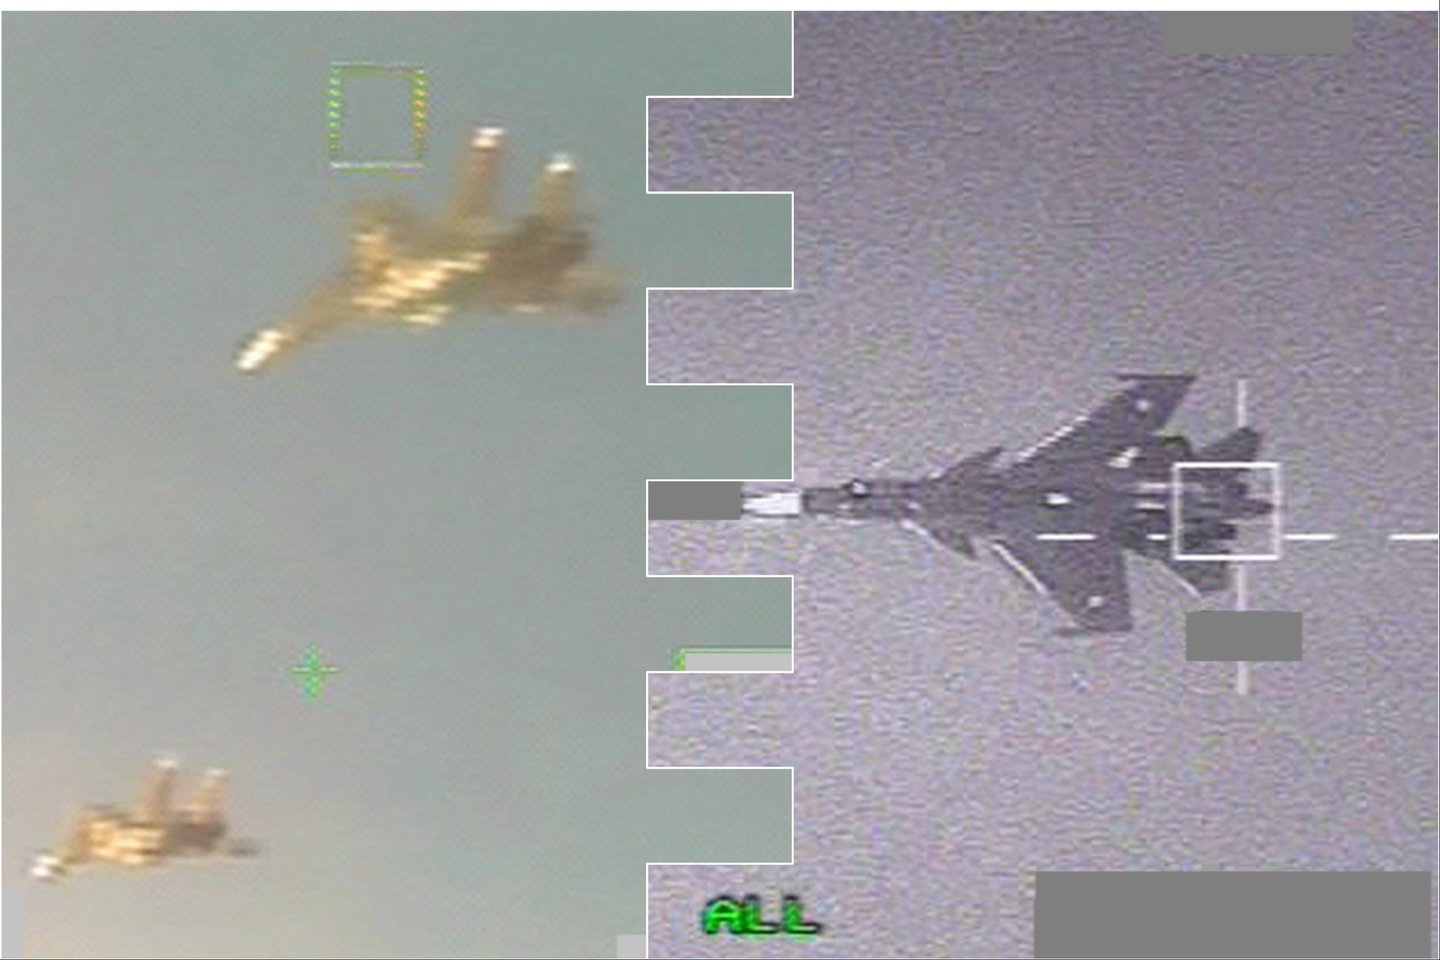  Du Belgijos karinių oro pajėgų naikintuvai „F-16“ susekė ir atpažino du Rusijos naikintuvus „Su-30“, kurie nepalaikė ryšio su civiline oro eismo kontrole.<br> Belgijos Karinių oro pajėgų nuotr., lrytas.lt mont.